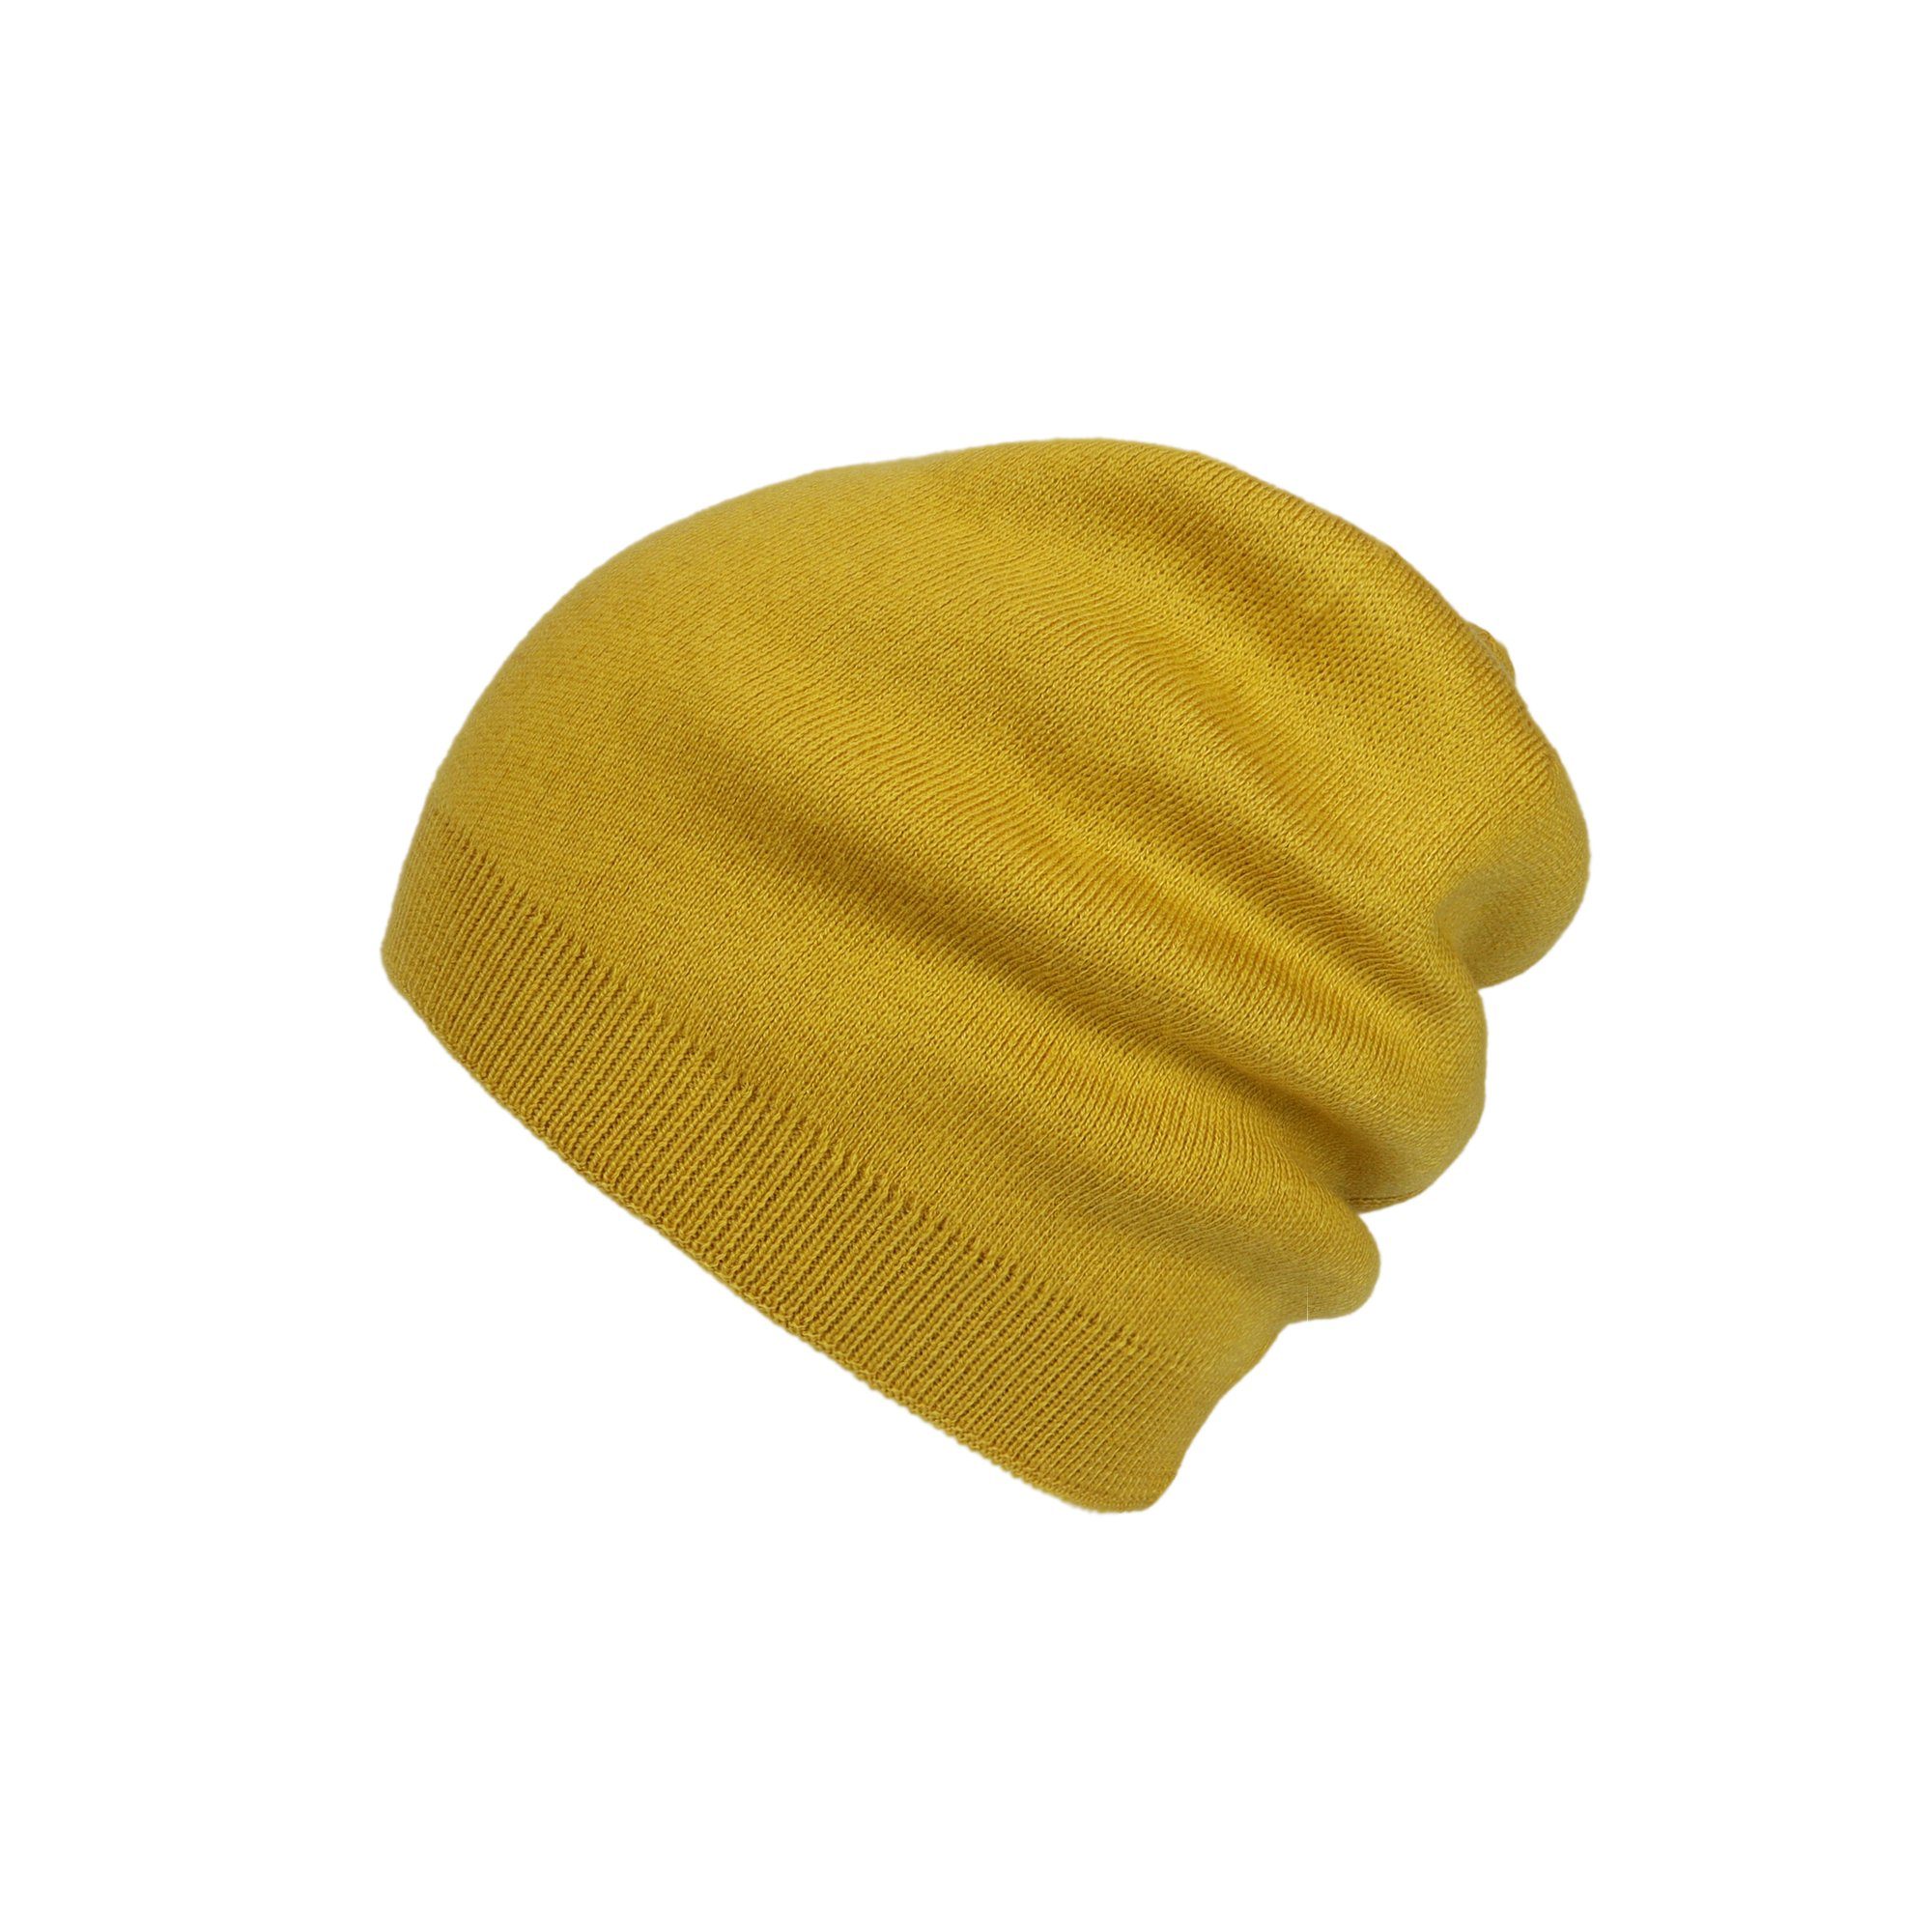 ZEBRO Strickmütze Beanie Mütze gelb | Strickmützen